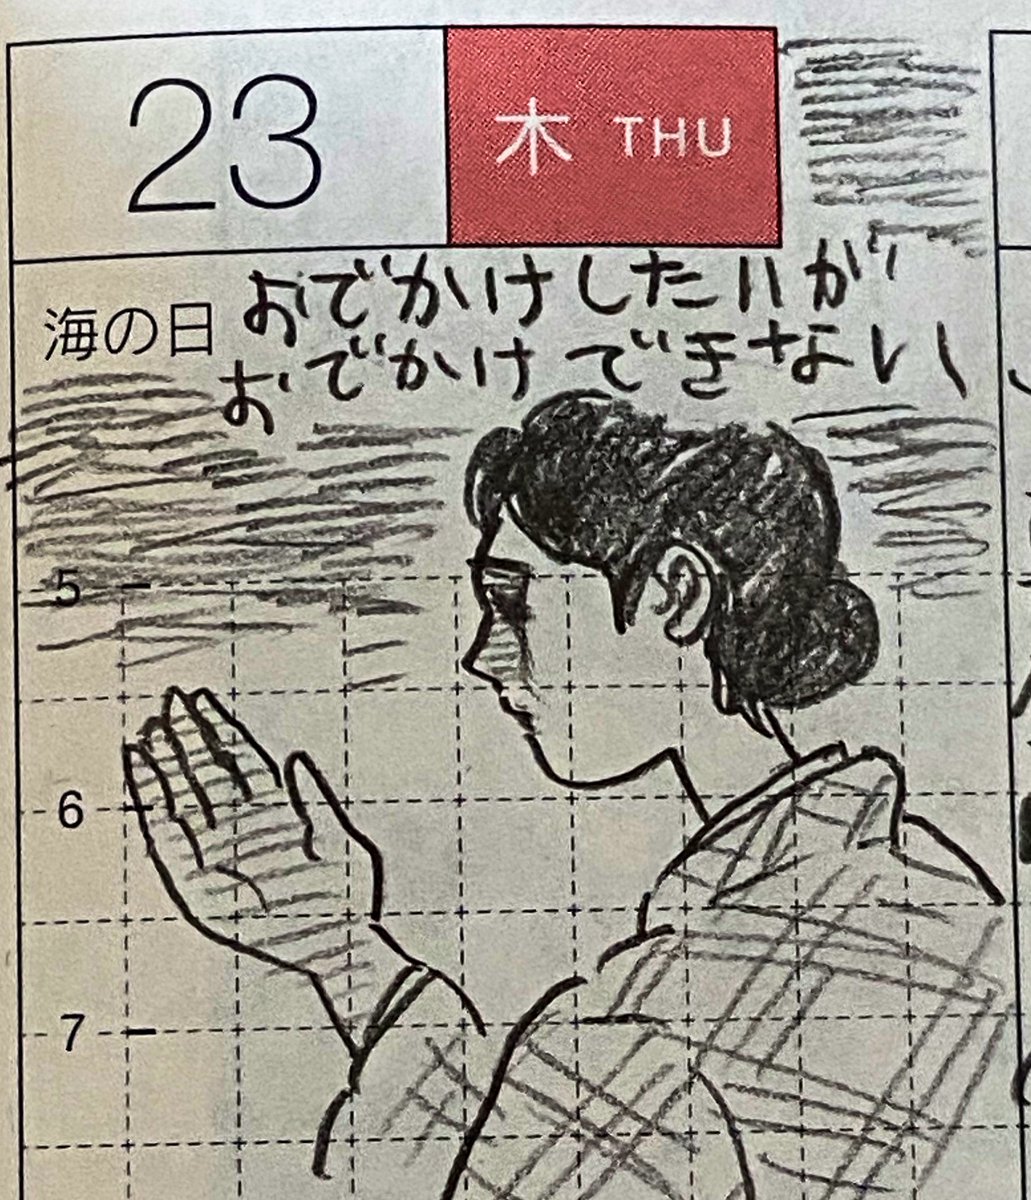 7月第4週の一コマ絵日記2/1
滋賀でまた新たなクラスターが発生した週だった
#一コマ絵日記
#ほぼ日 